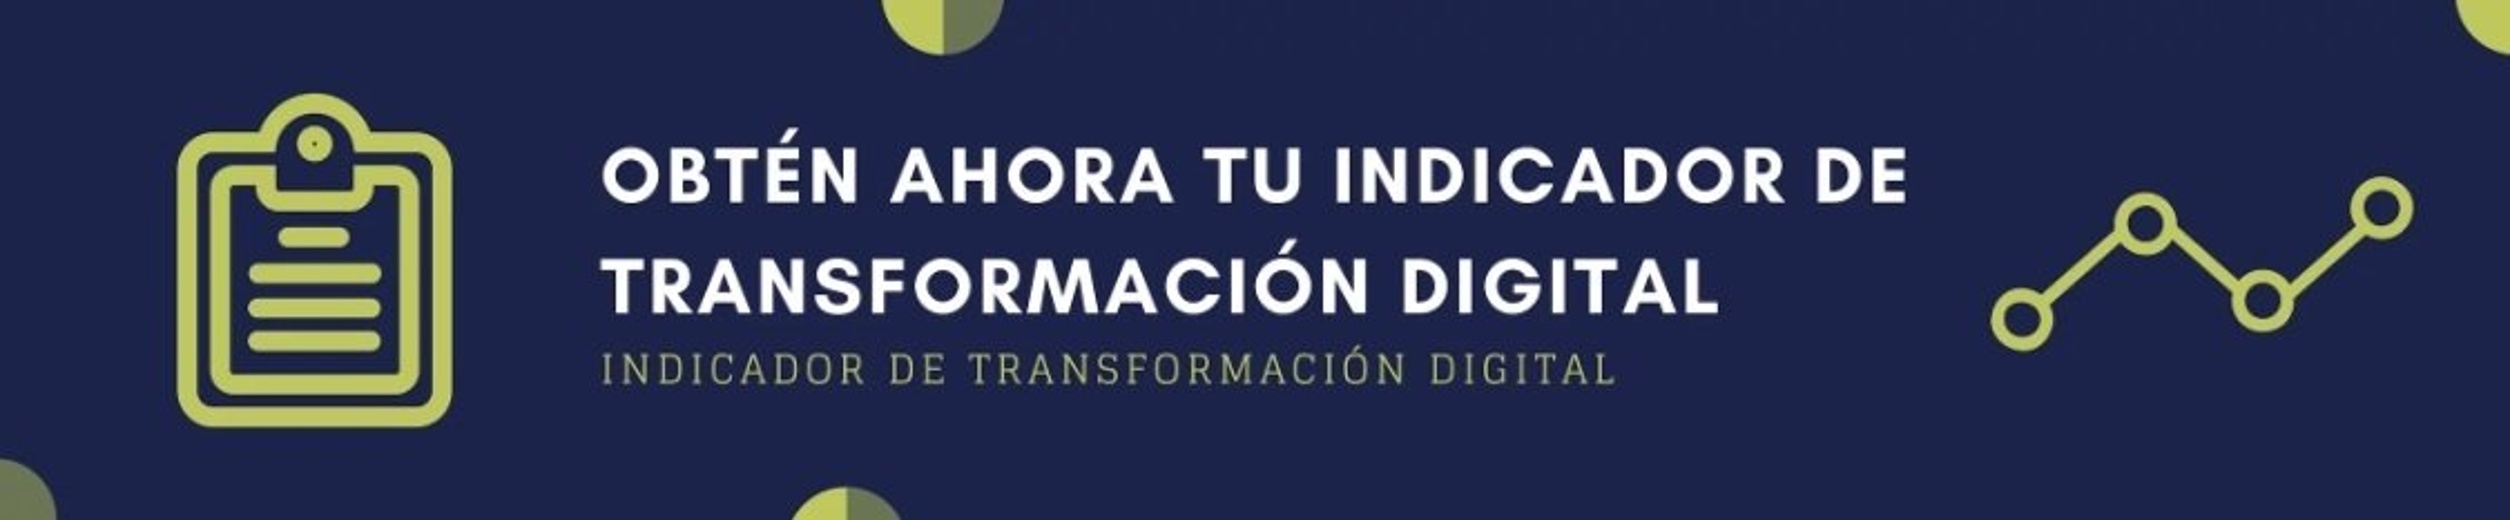 Indicador de transformación digital